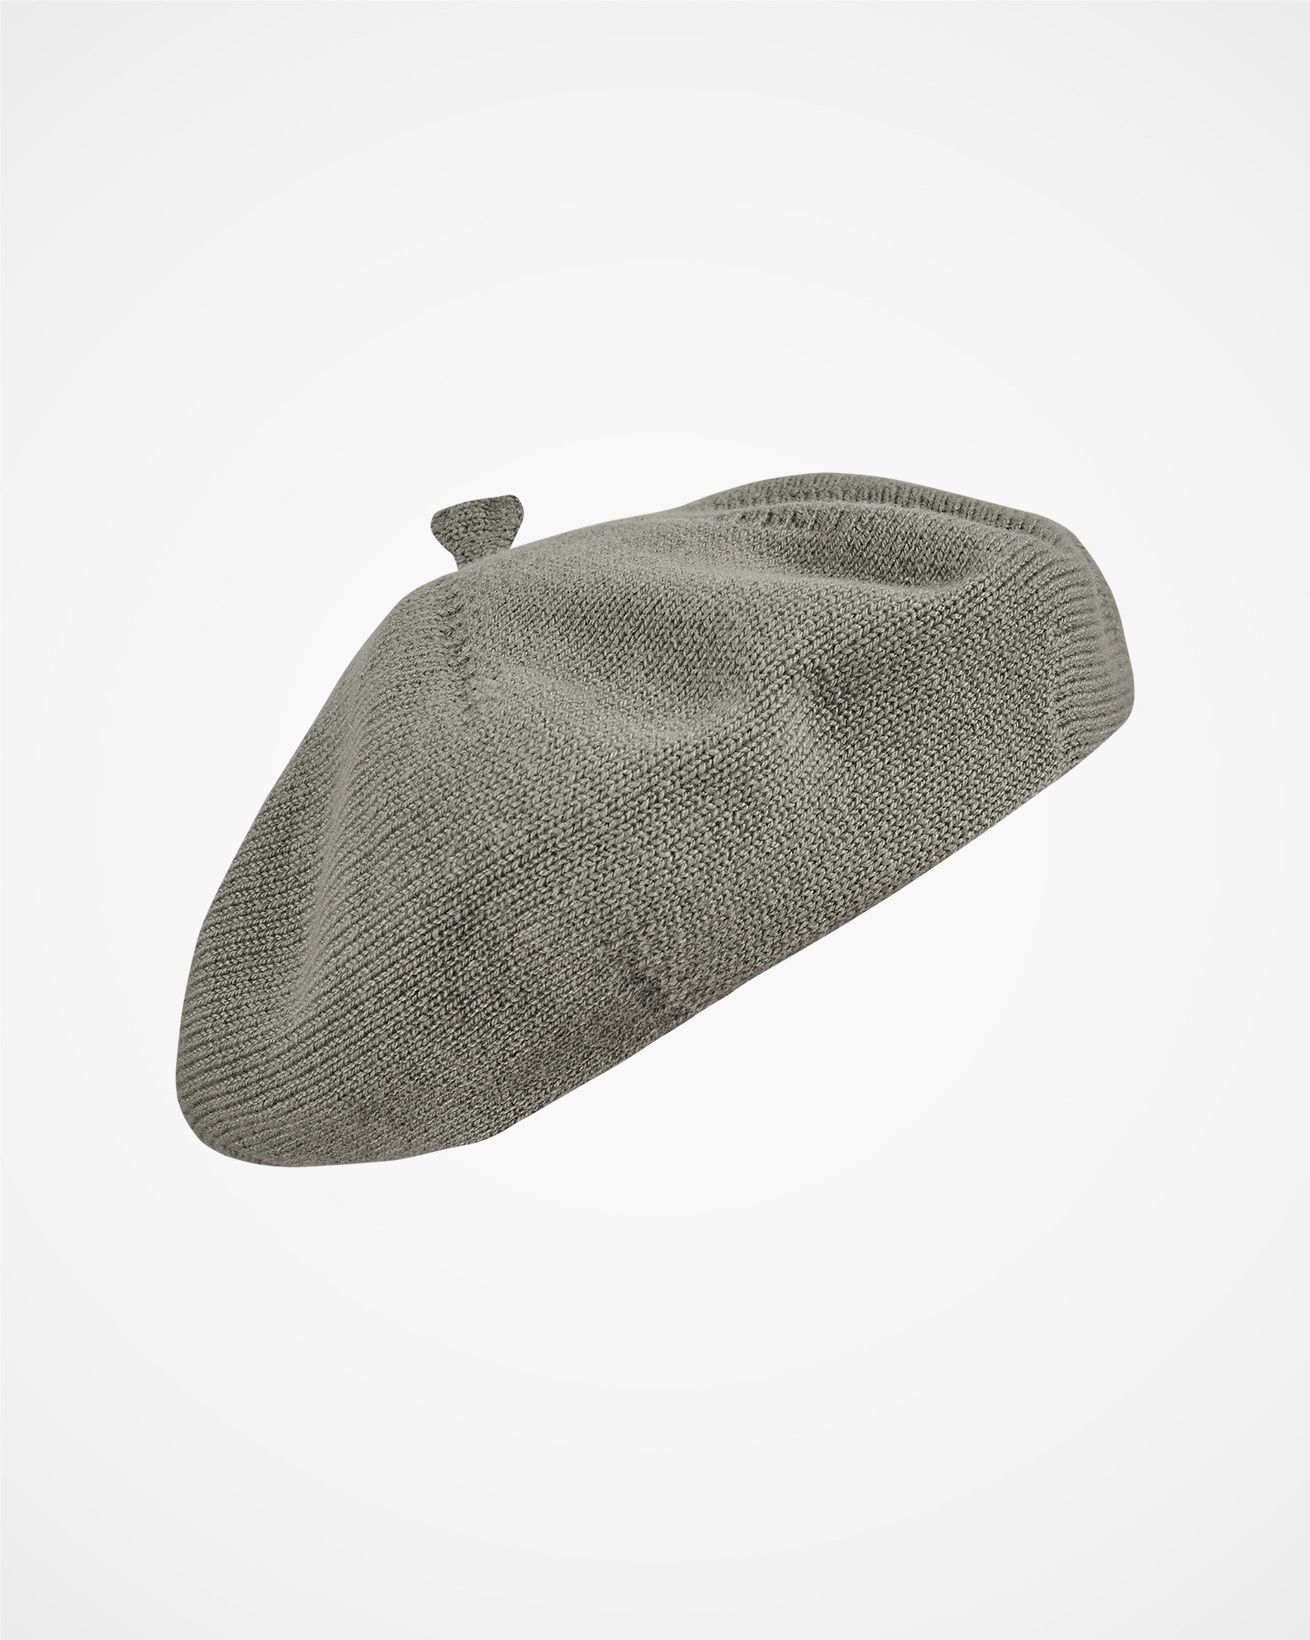 7489_cashmere-beret-light-grey_1_cutout_web.jpg